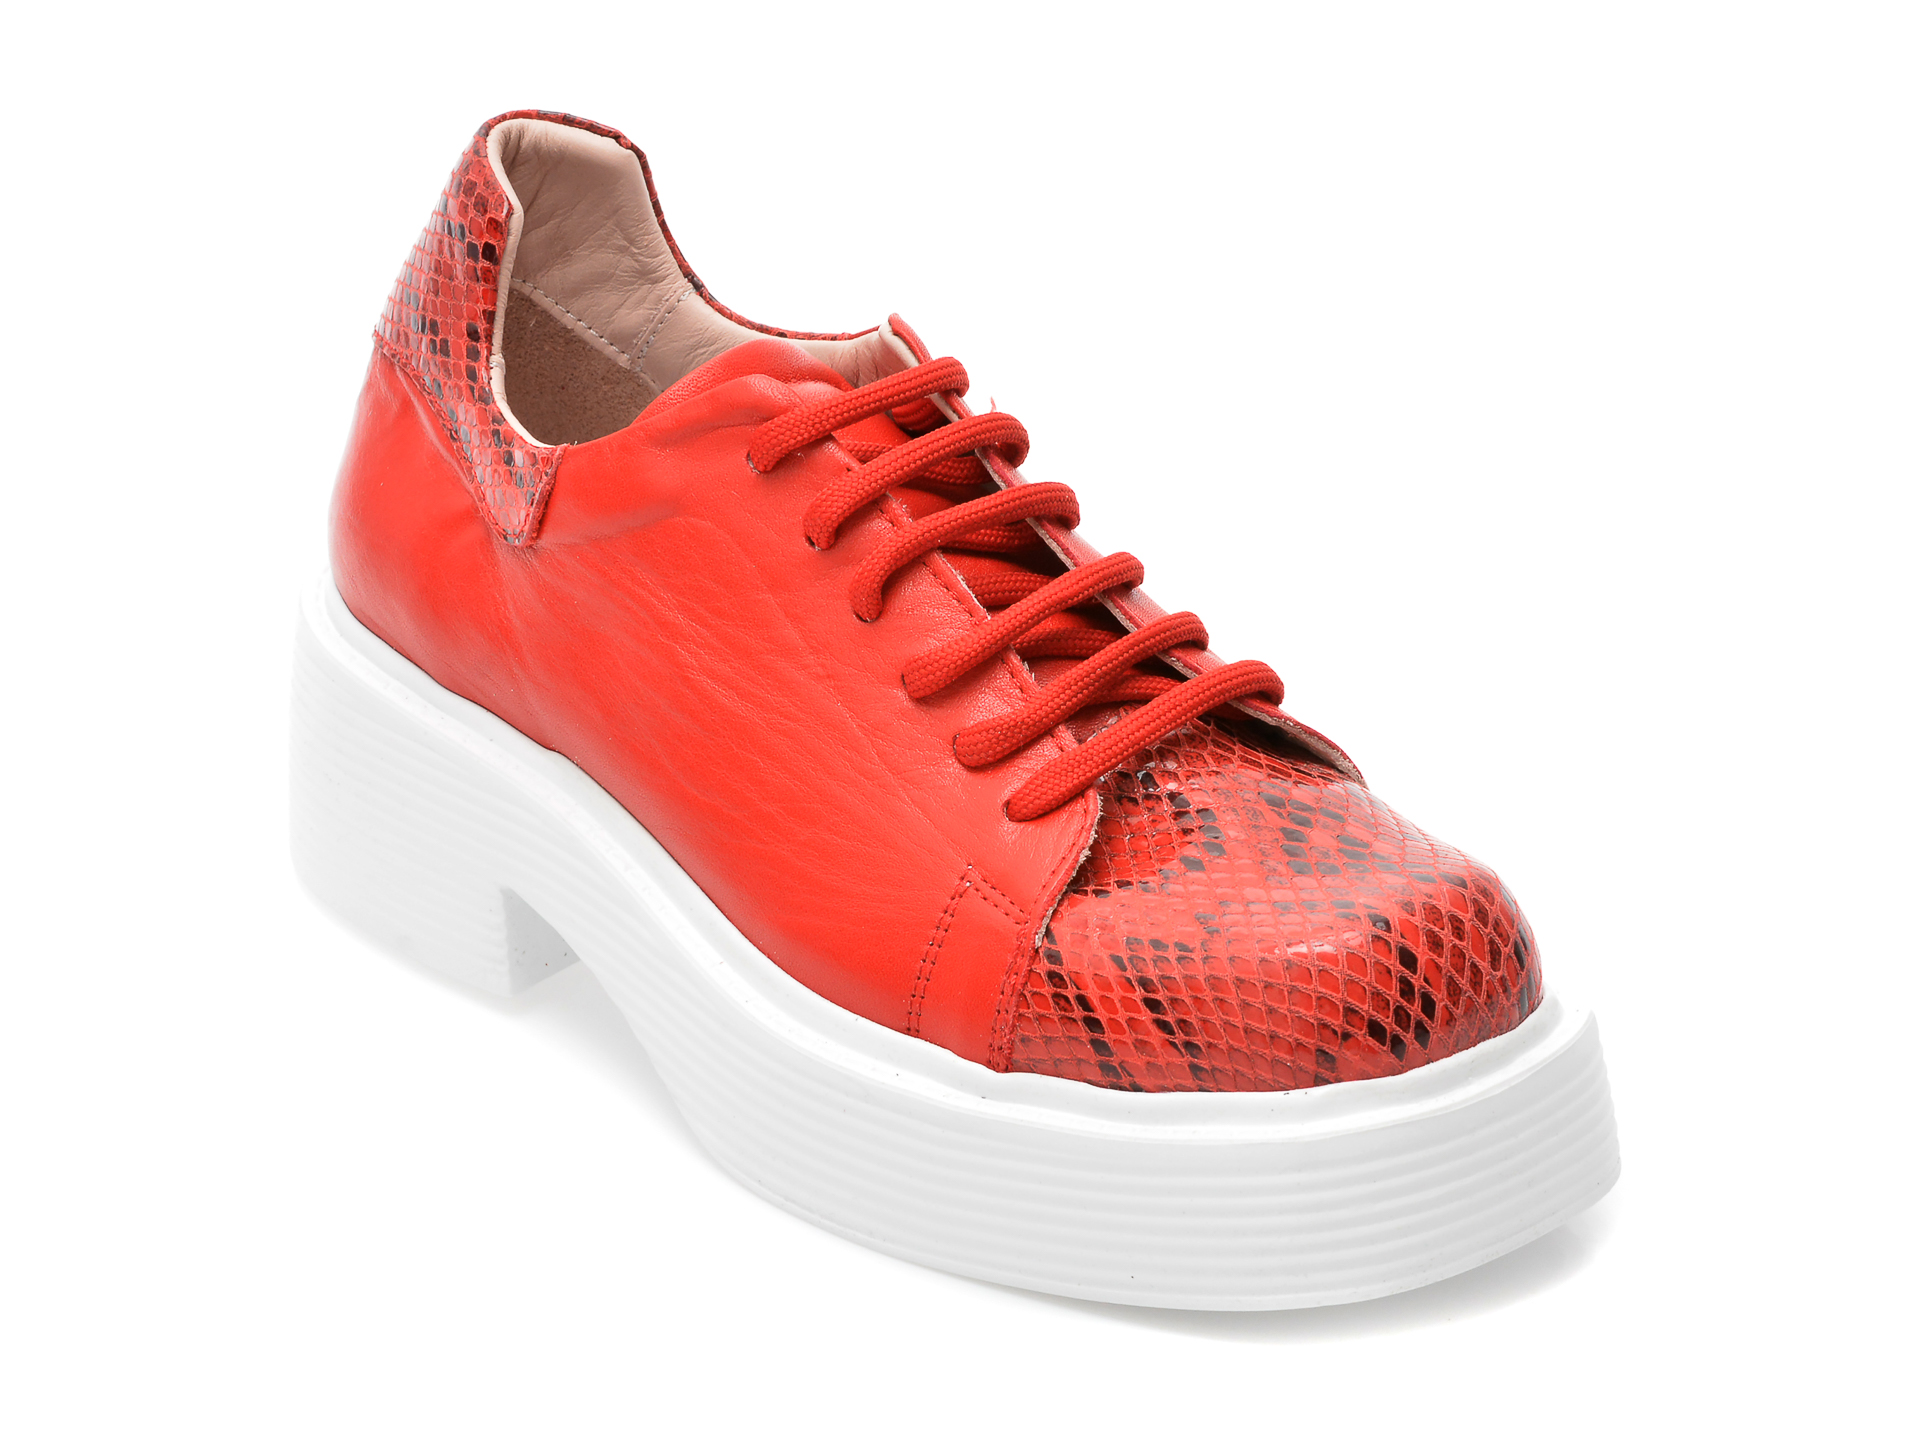 Pantofi FLAVIA PASSINI rosii, 81092, din piele naturala Flavia Passini